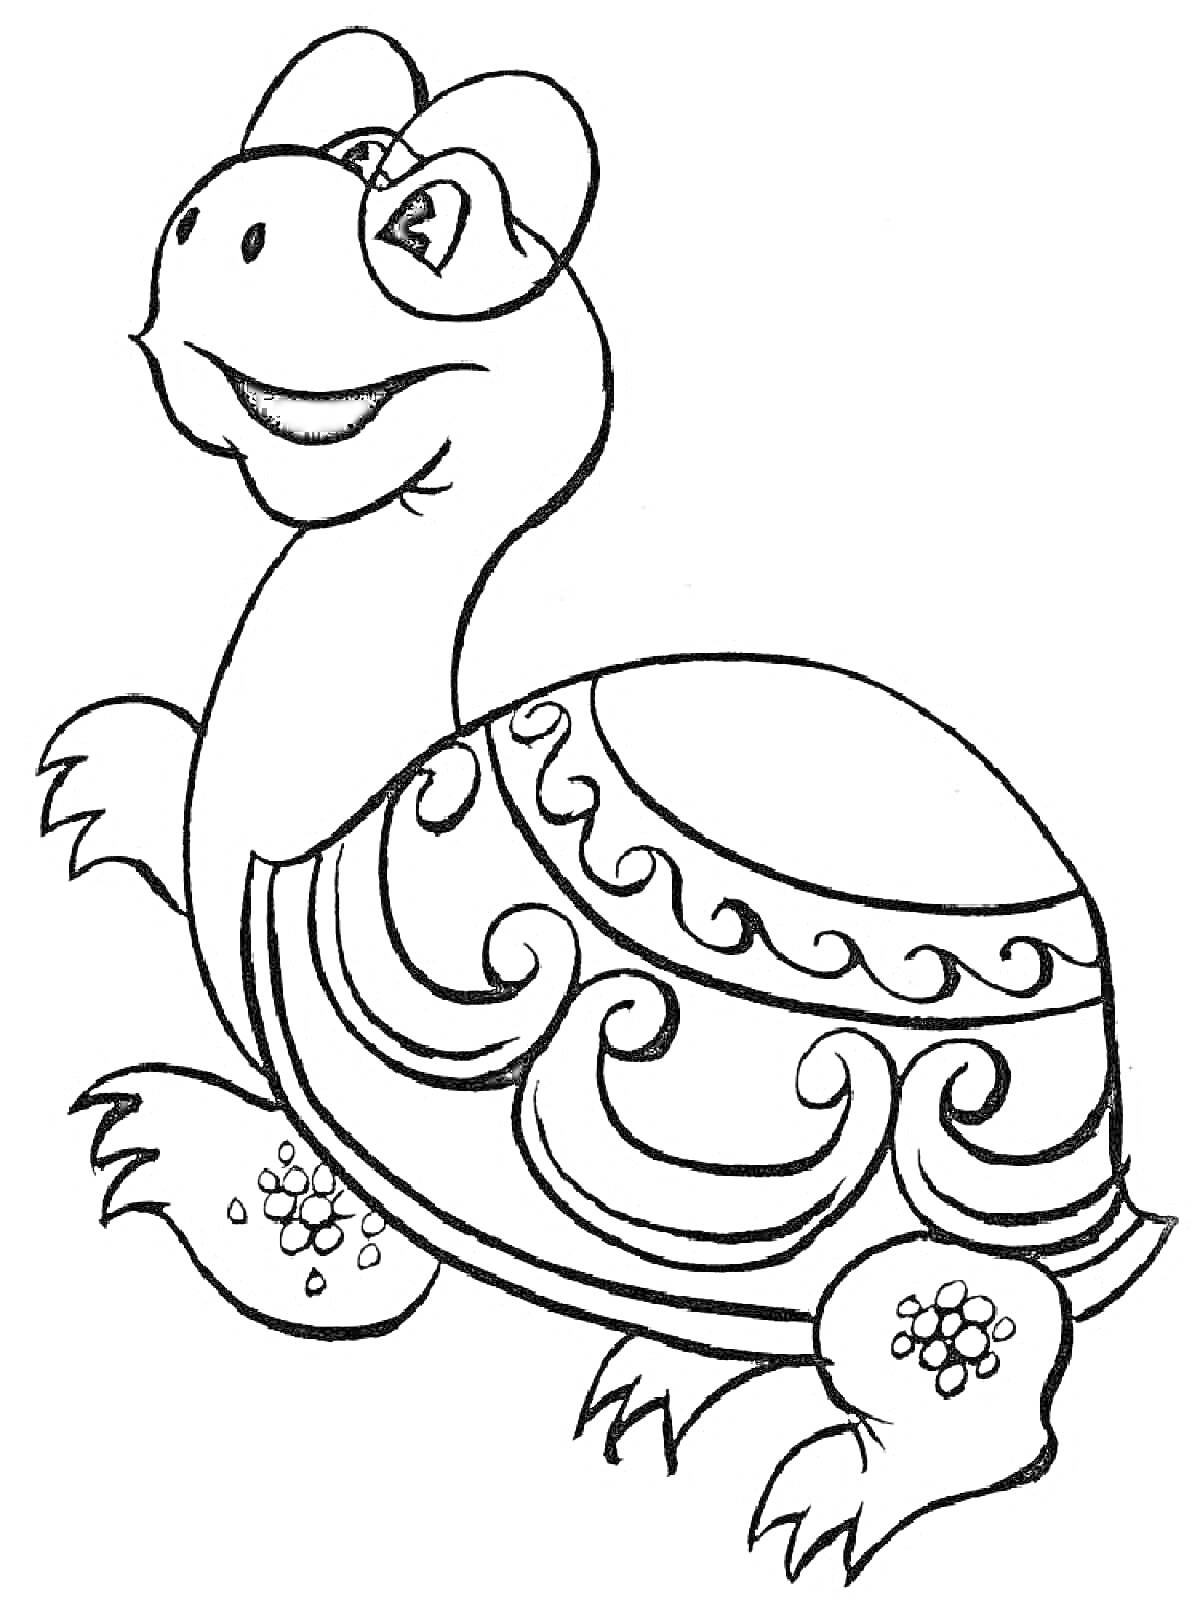 Раскраска Черепаха с узорами на панцире, улыбающаяся черепаха с цветочным рисунком на лапах